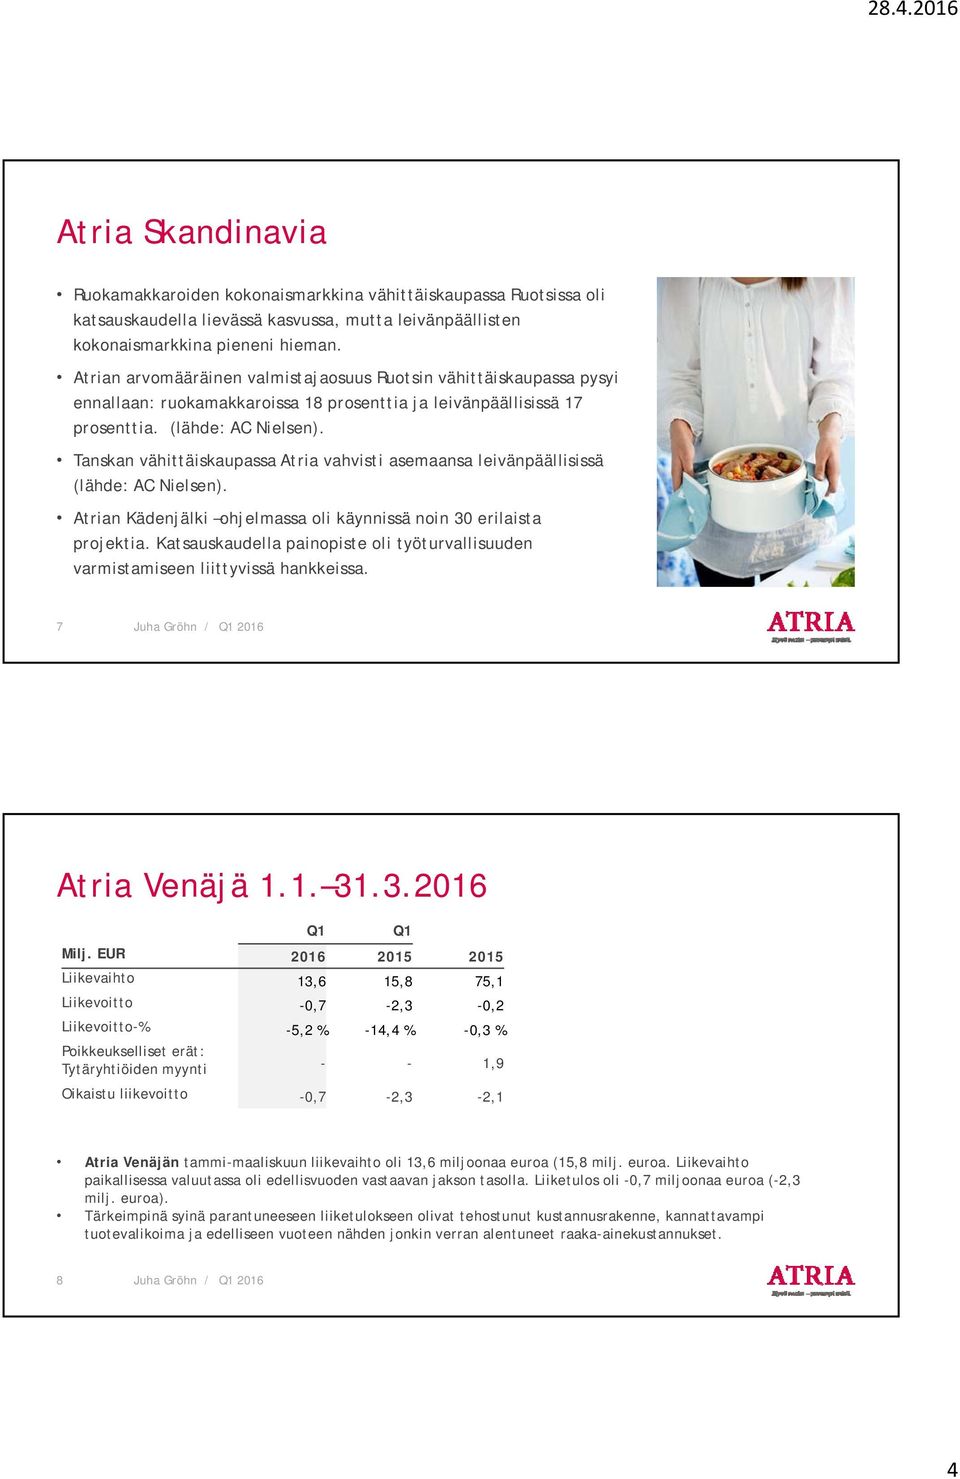 Tanskan vähittäiskaupassa Atria vahvisti asemaansa leivänpäällisissä (lähde: AC Nielsen). Atrian Kädenjälki ohjelmassa oli käynnissä noin 30 erilaista projektia.